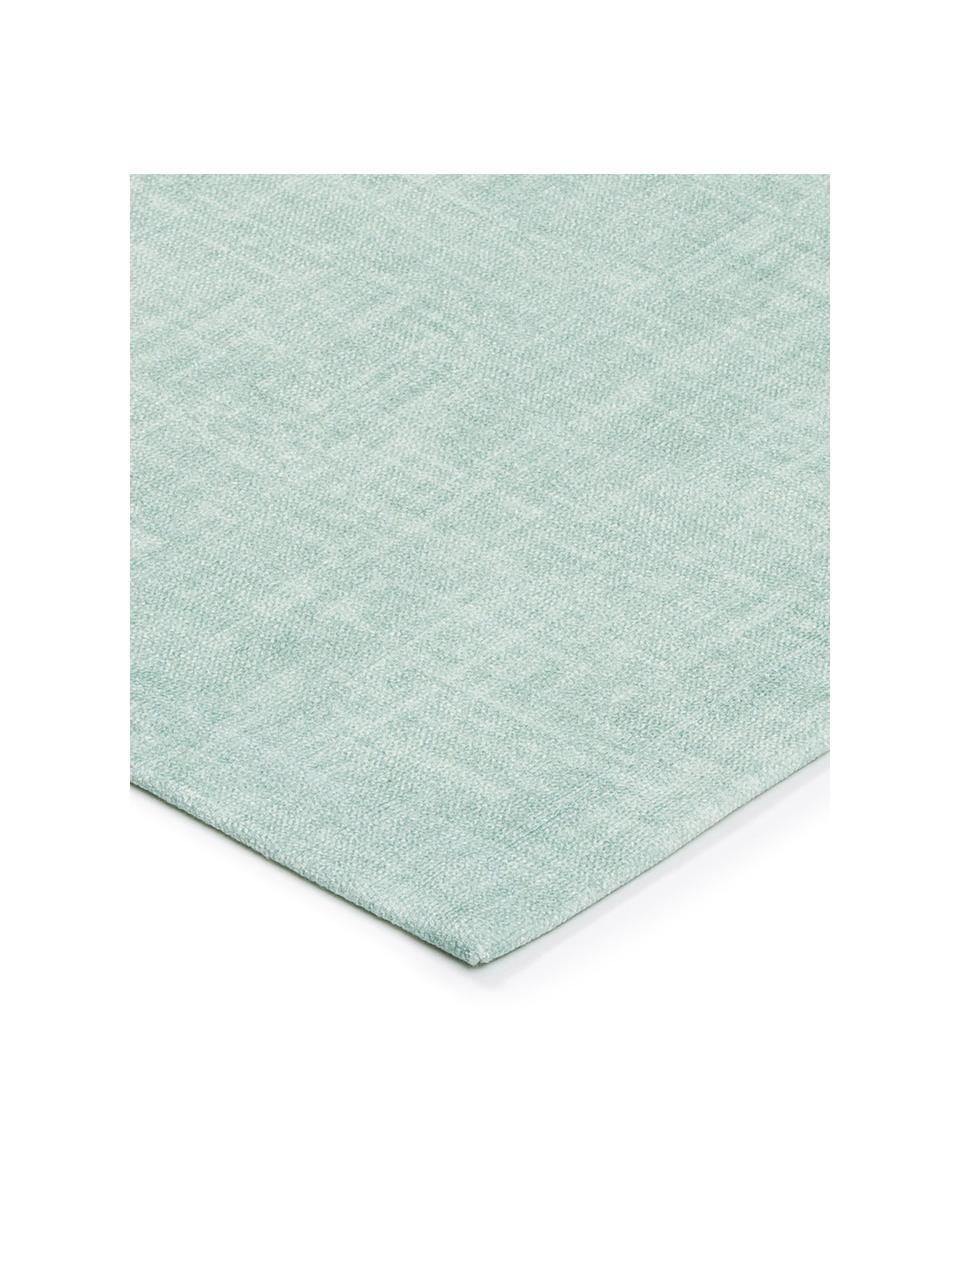 Tischläufer June aus Bio-Baumwolle in Mint, Bio-Baumwolle, Mint, 40 x 145 cm